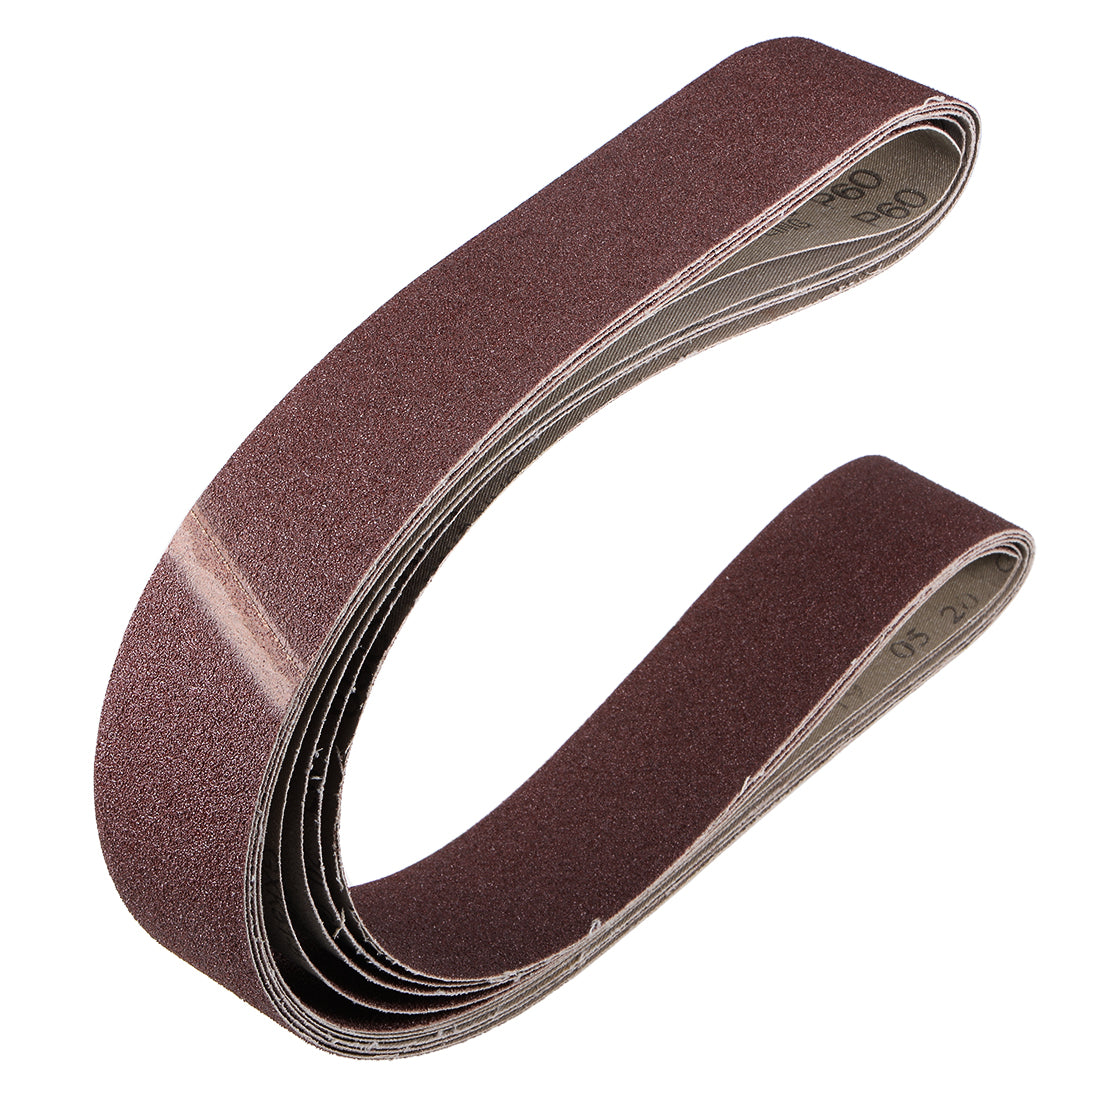 uxcell Uxcell 2 x 48 Inch Sanding Belt 60 Grit Sand Belts for Belt Sander 5pcs